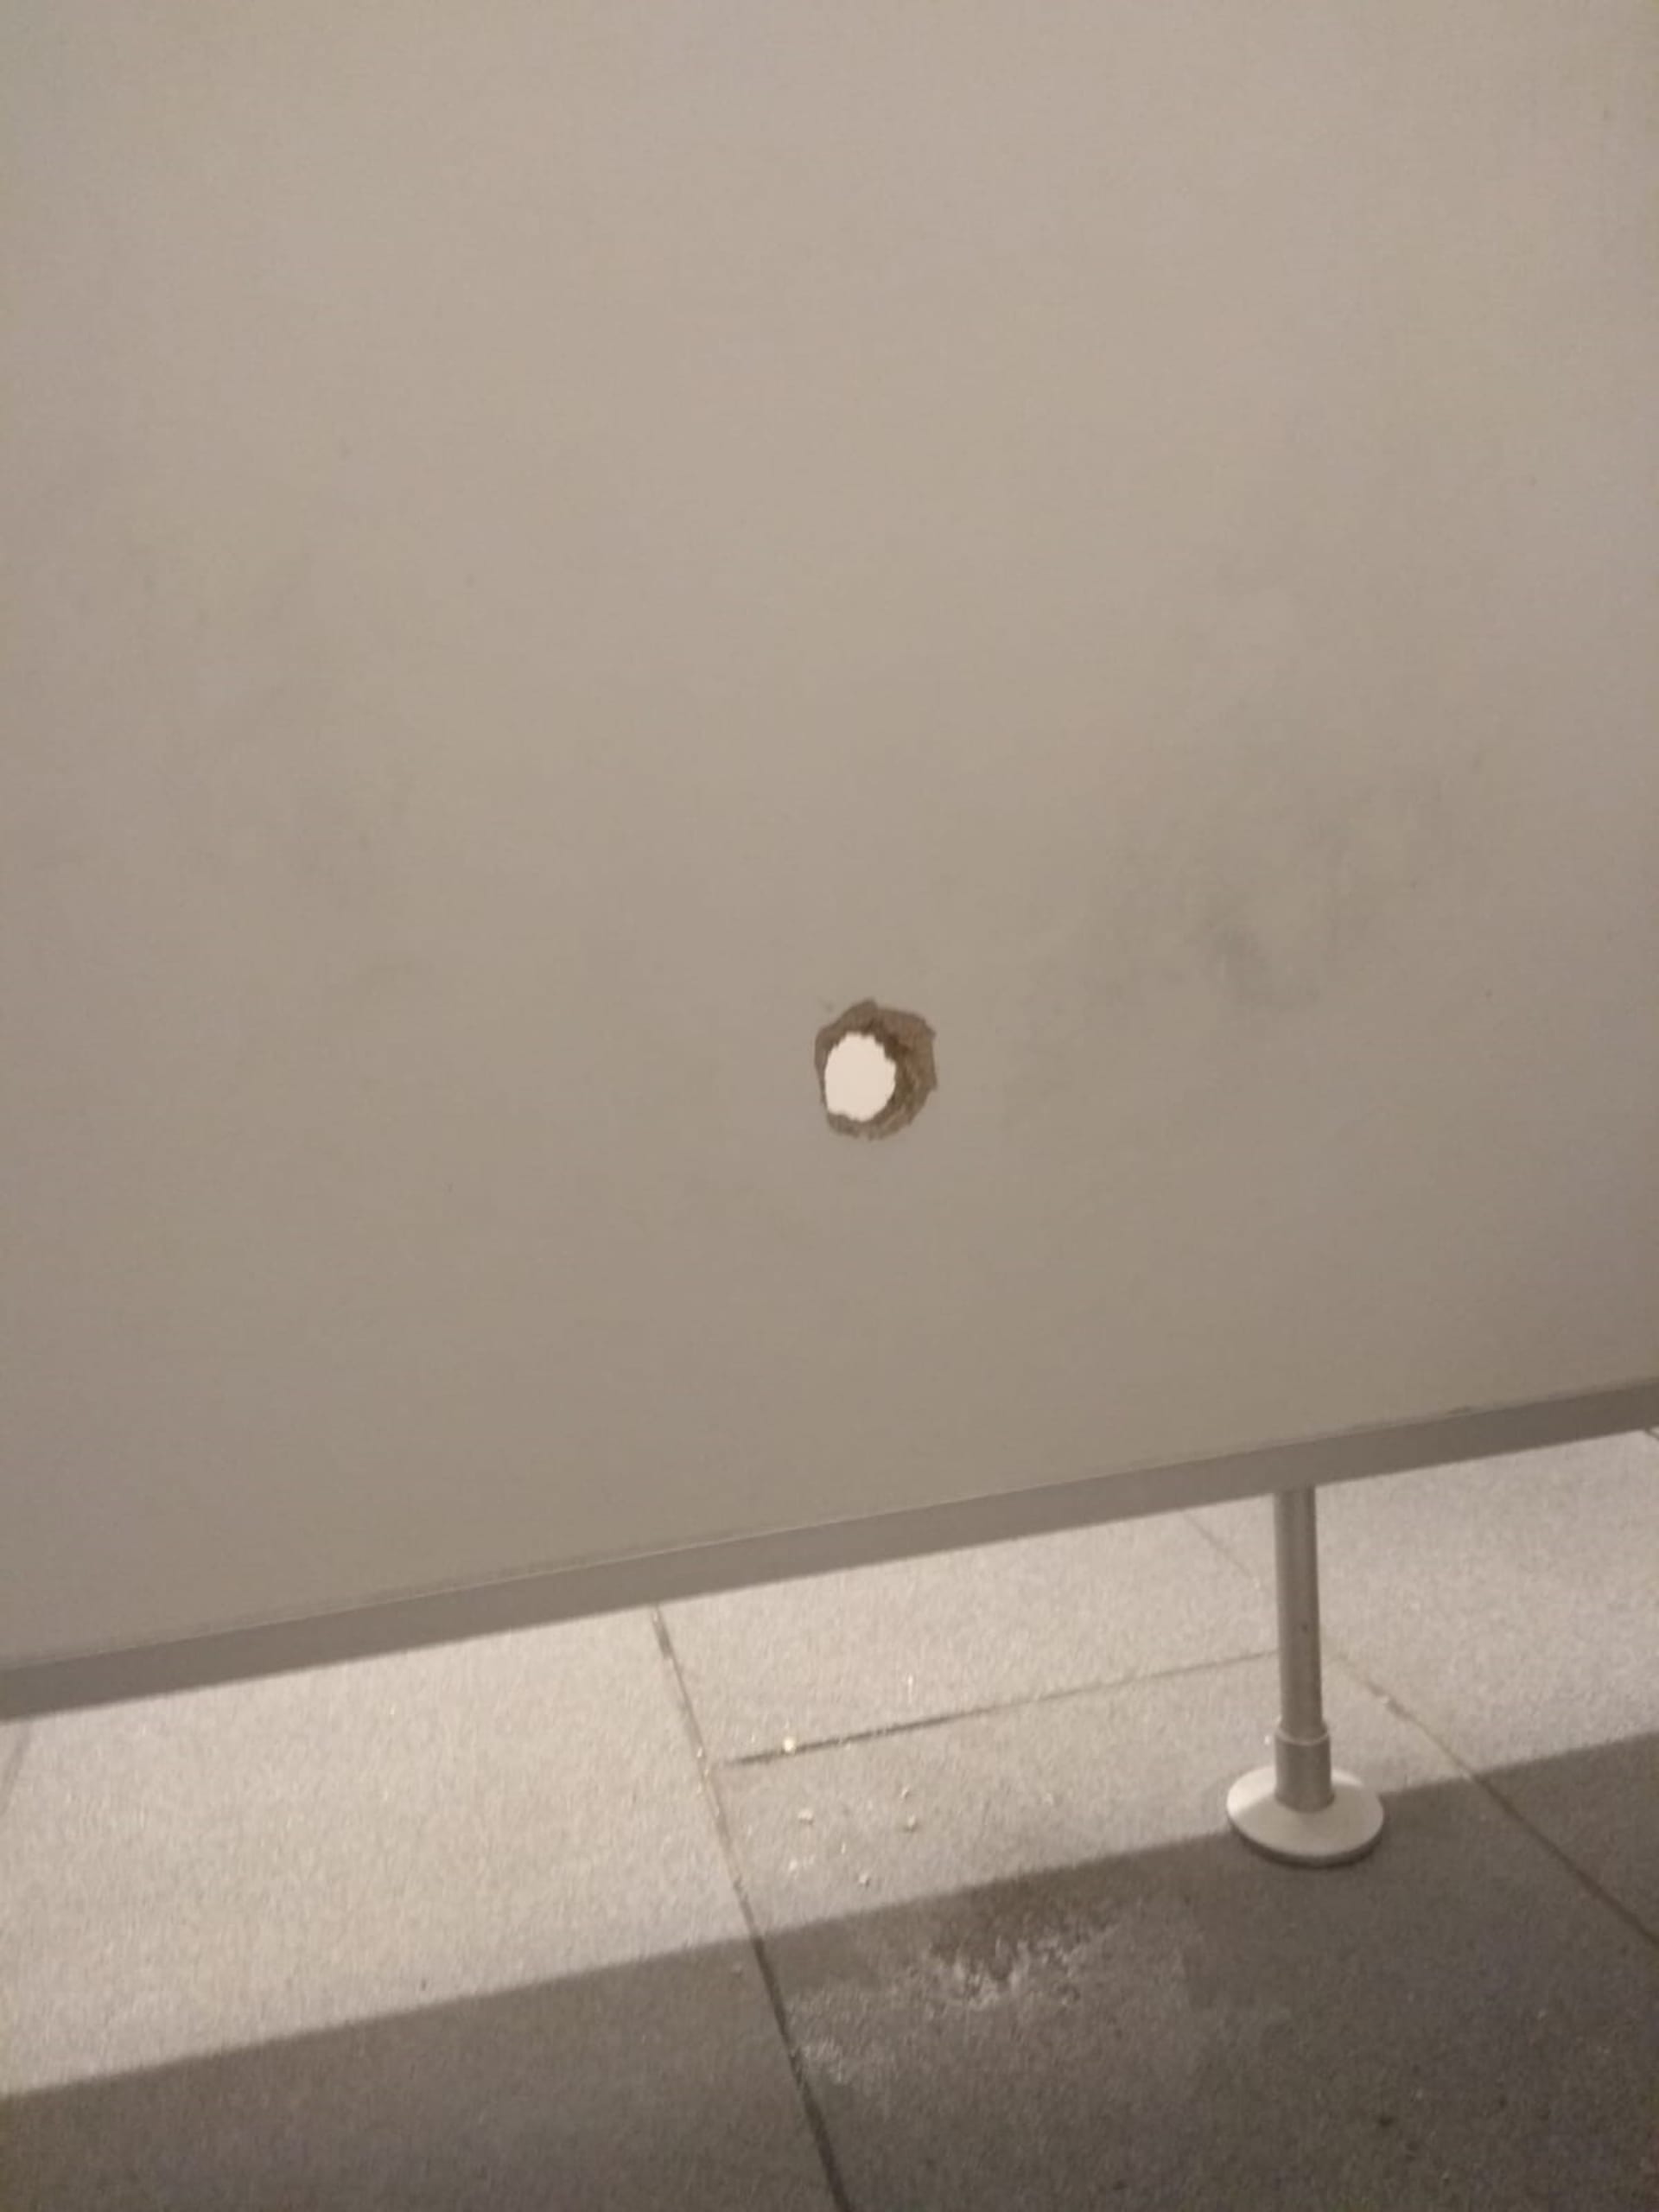 Policie v Pardubicích hledá sexuálního devianta. Muž měl špehovat ženy na dámských záchodcích otvorem vyřezaným ve stěně. Jedné z nich pak prostrčil do kabinky své přirození. 